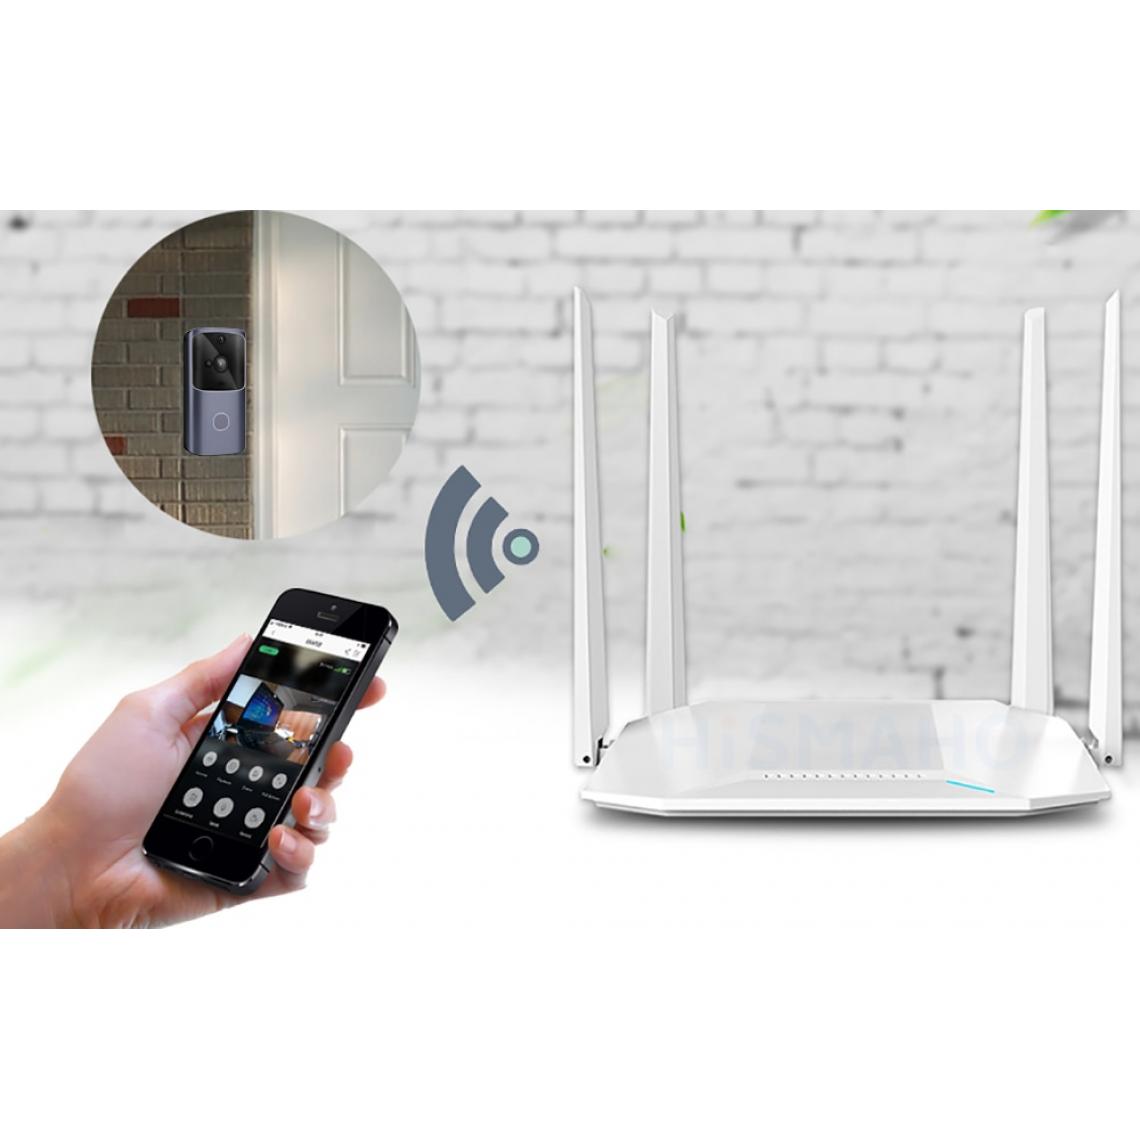 Universal - Sonnette maison intelligente sans fil téléphone portable sonnette caméra sécurité vidéo walkie-talkie 720p HD IR vision nocturne appartement | sonnette (gris) - Sonnette et visiophone connecté